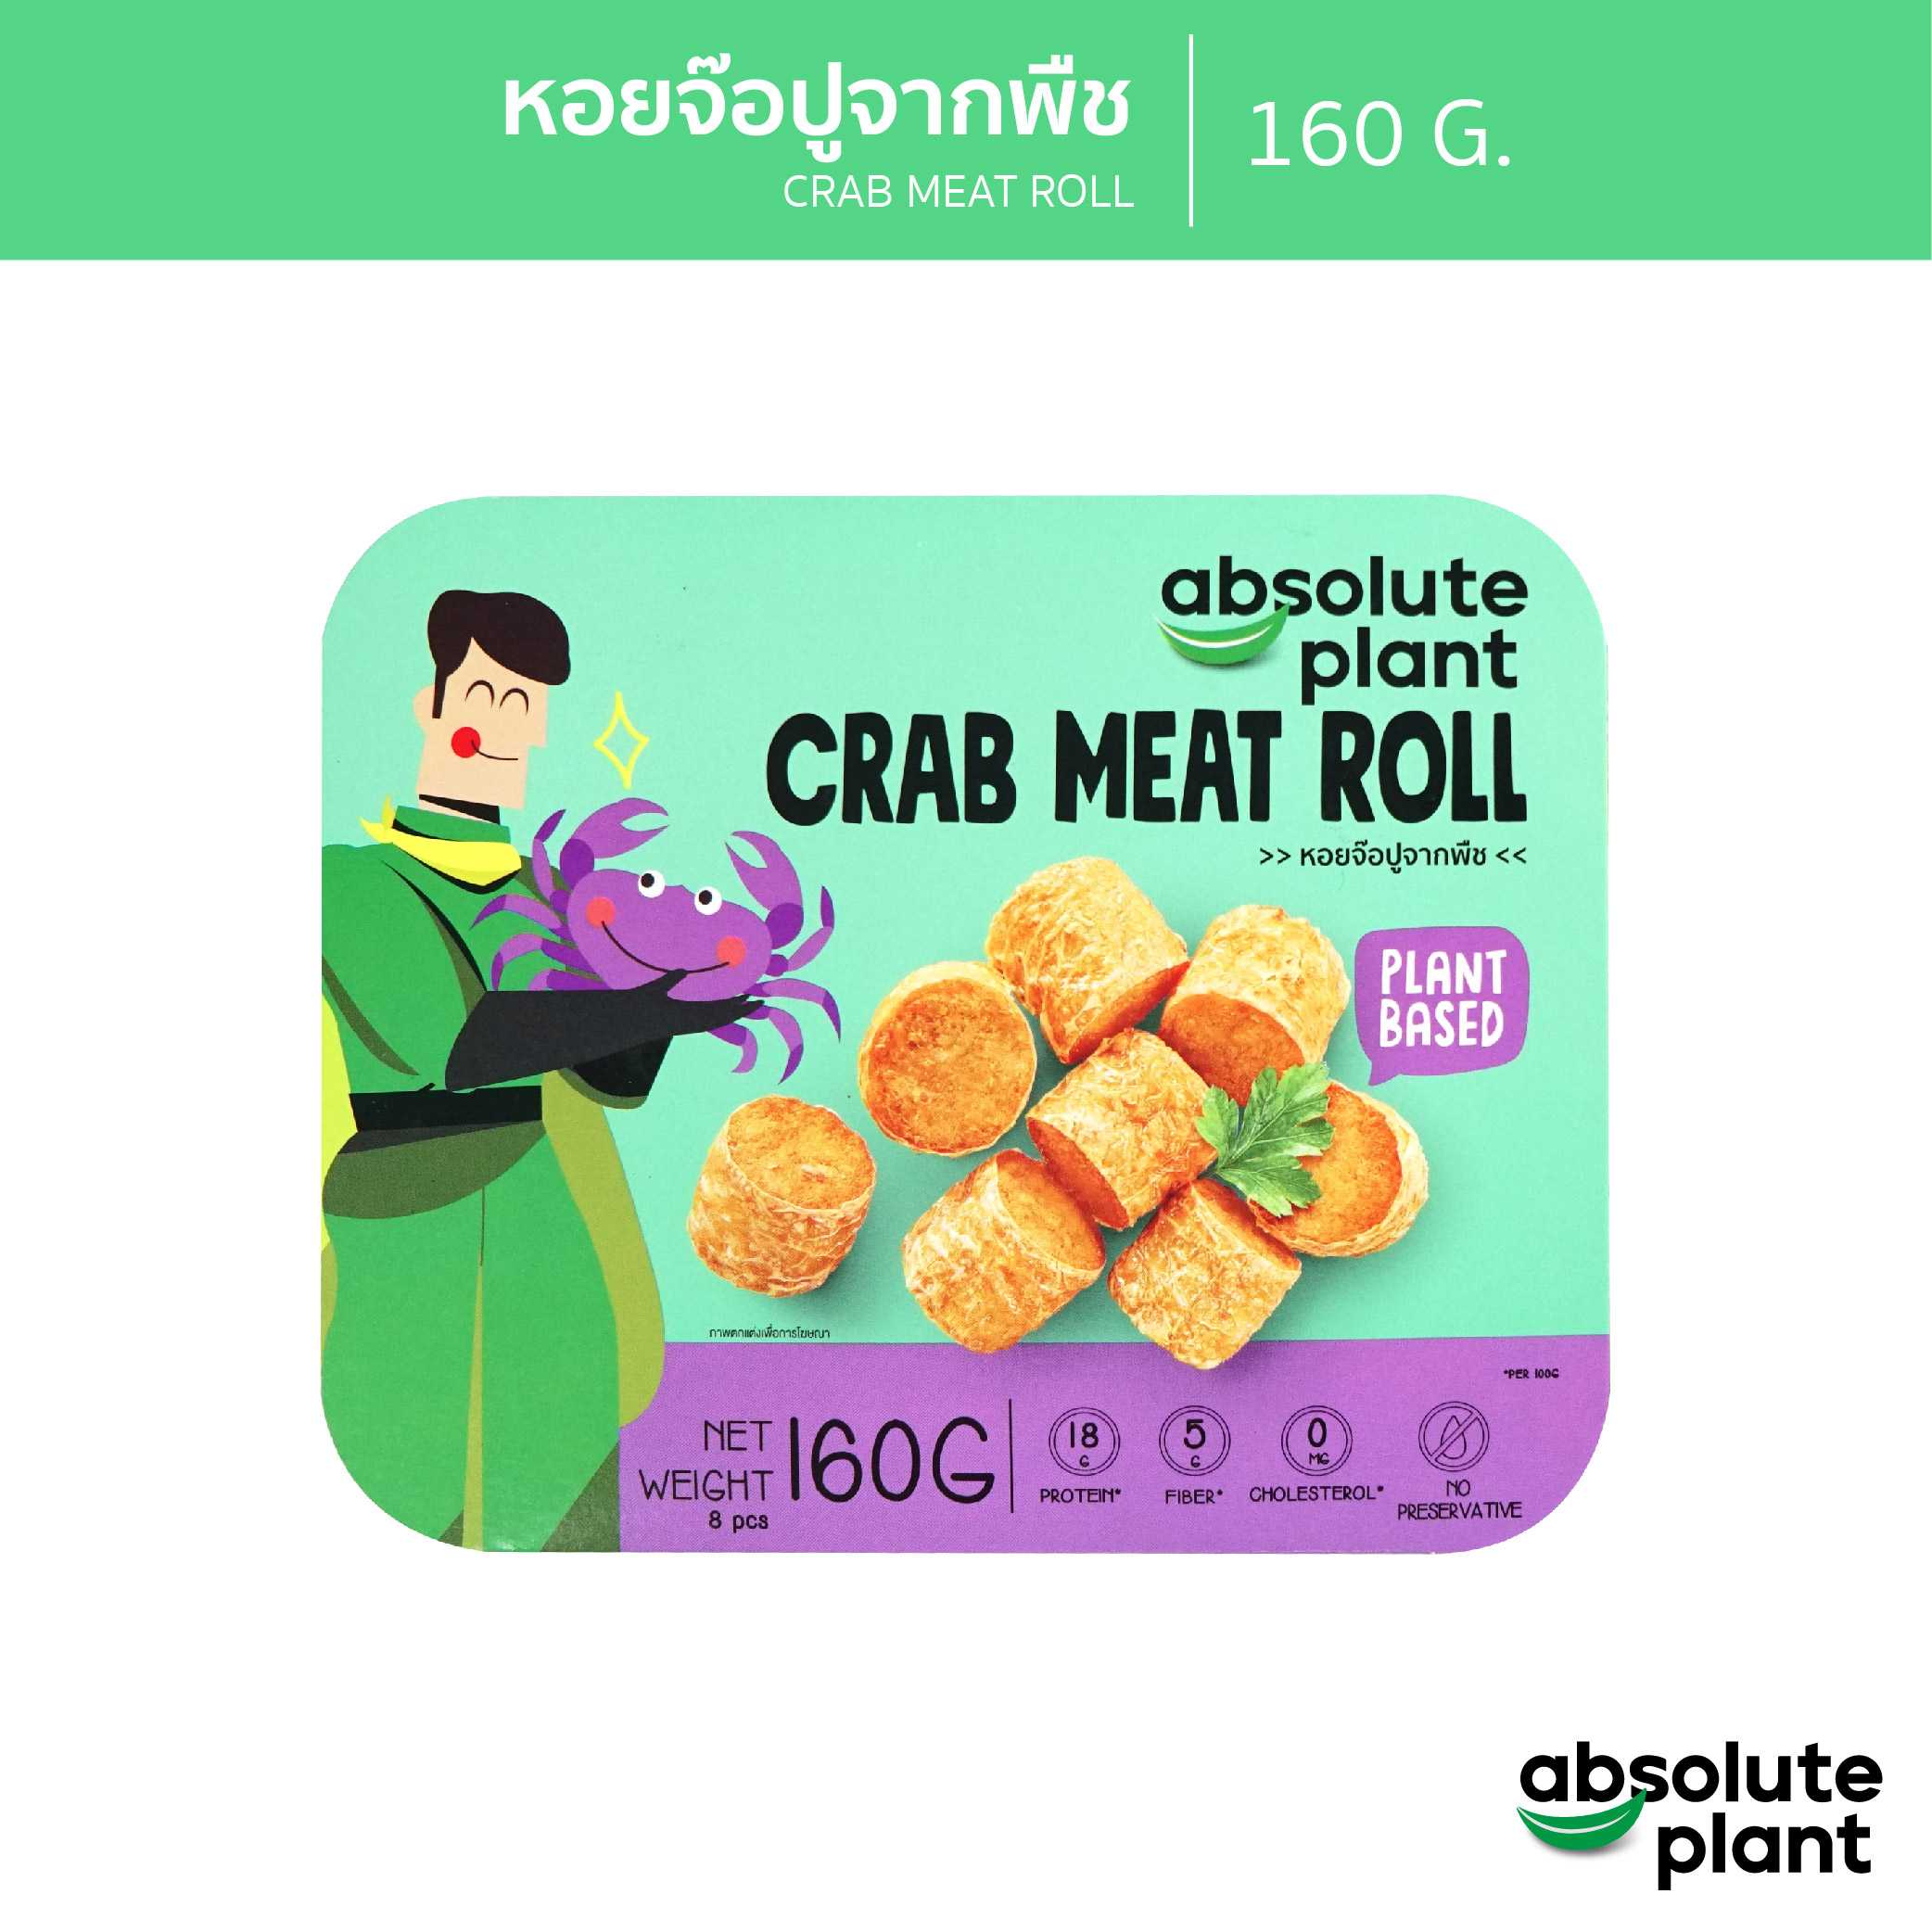 หอยจ๊อปูจากพืช / Plant - Based Crab Meat Roll / Absoluteplant